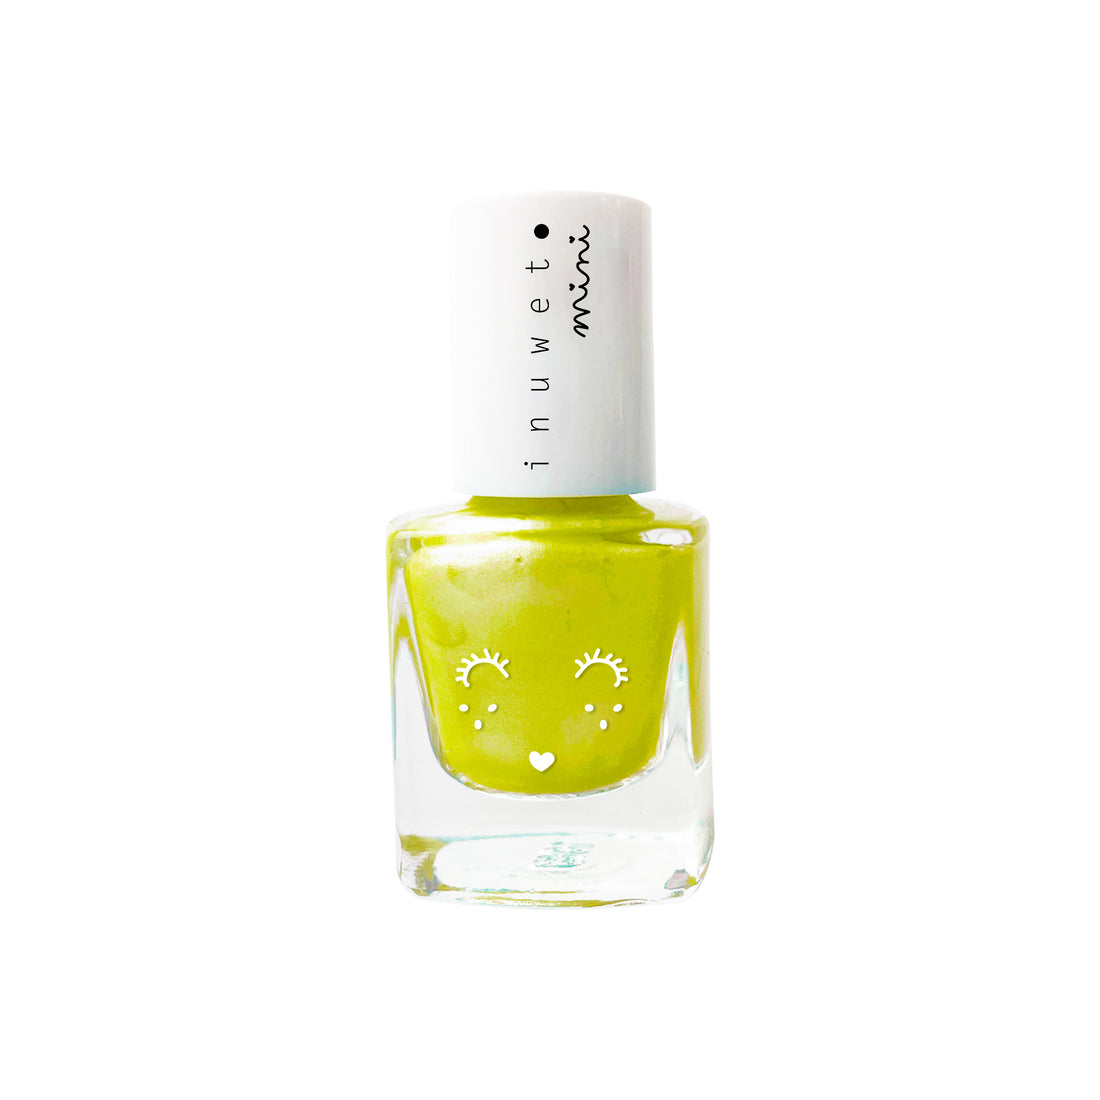 inuwet-neon-yellow-pineapple-scent-for-kids-inuw-vinkv15